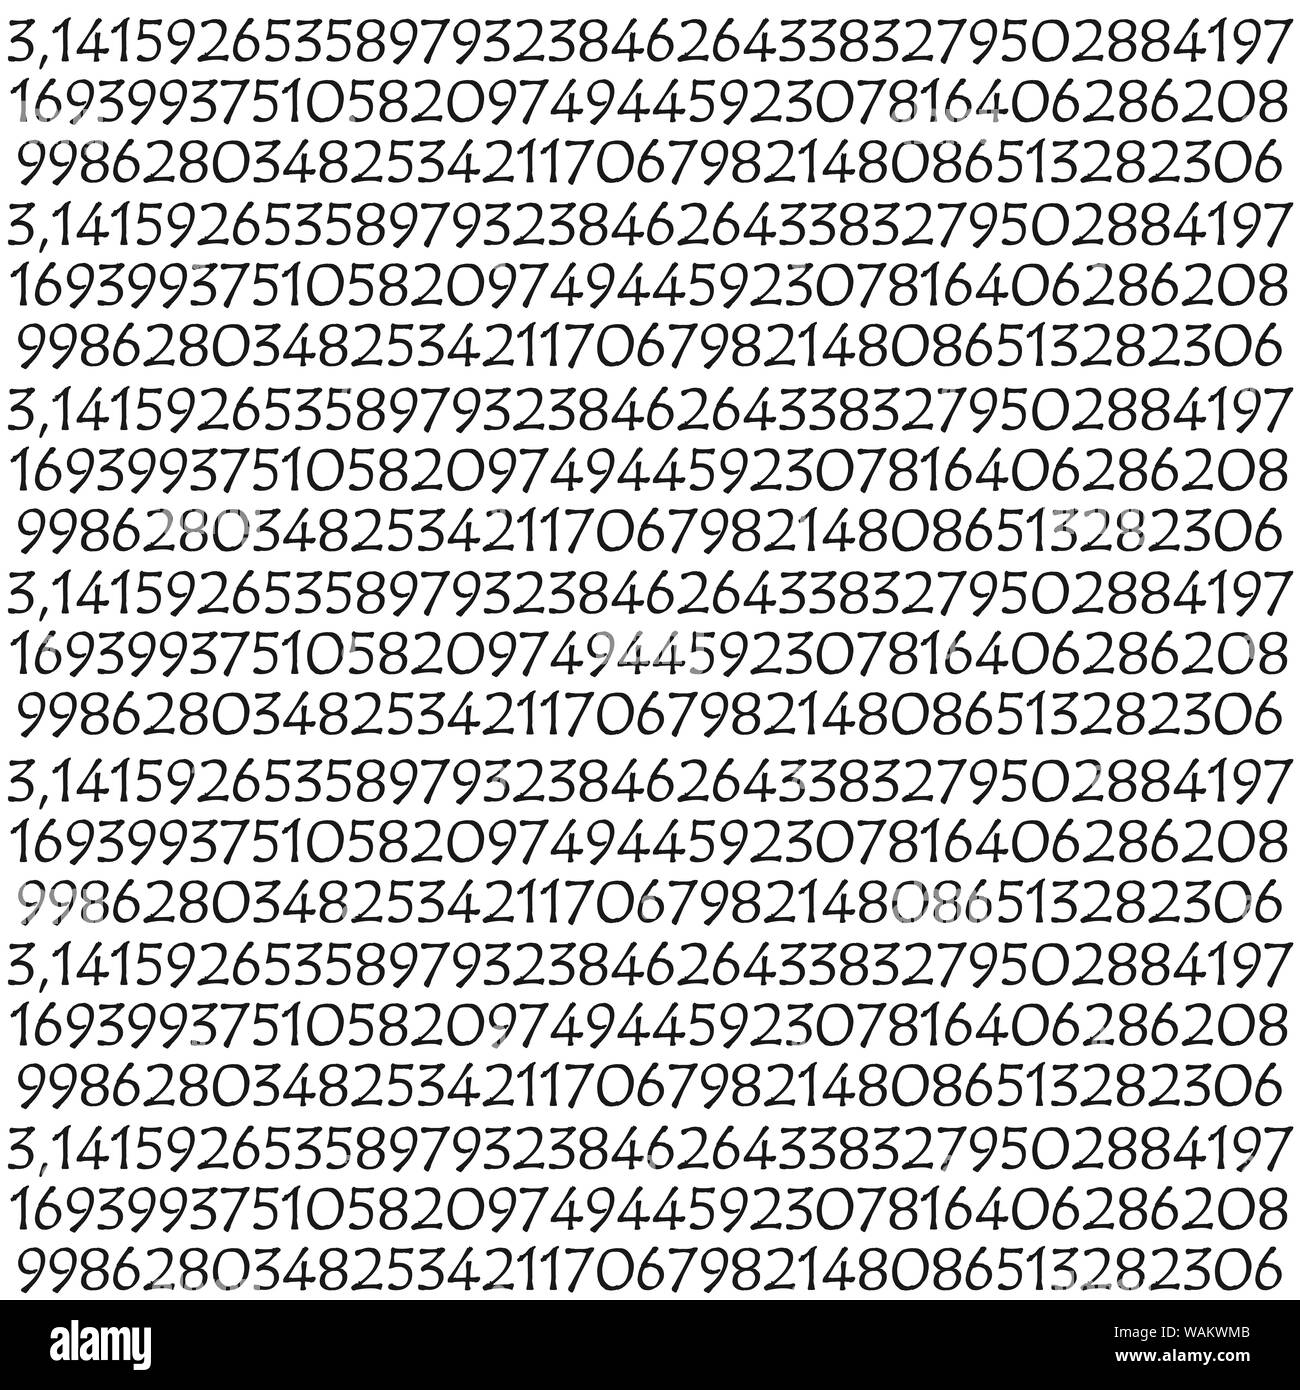 Das Symbol für Pi mathematische Konstante irrationale Zahl, griechischen  Buchstaben, Hintergrund Stockfotografie - Alamy